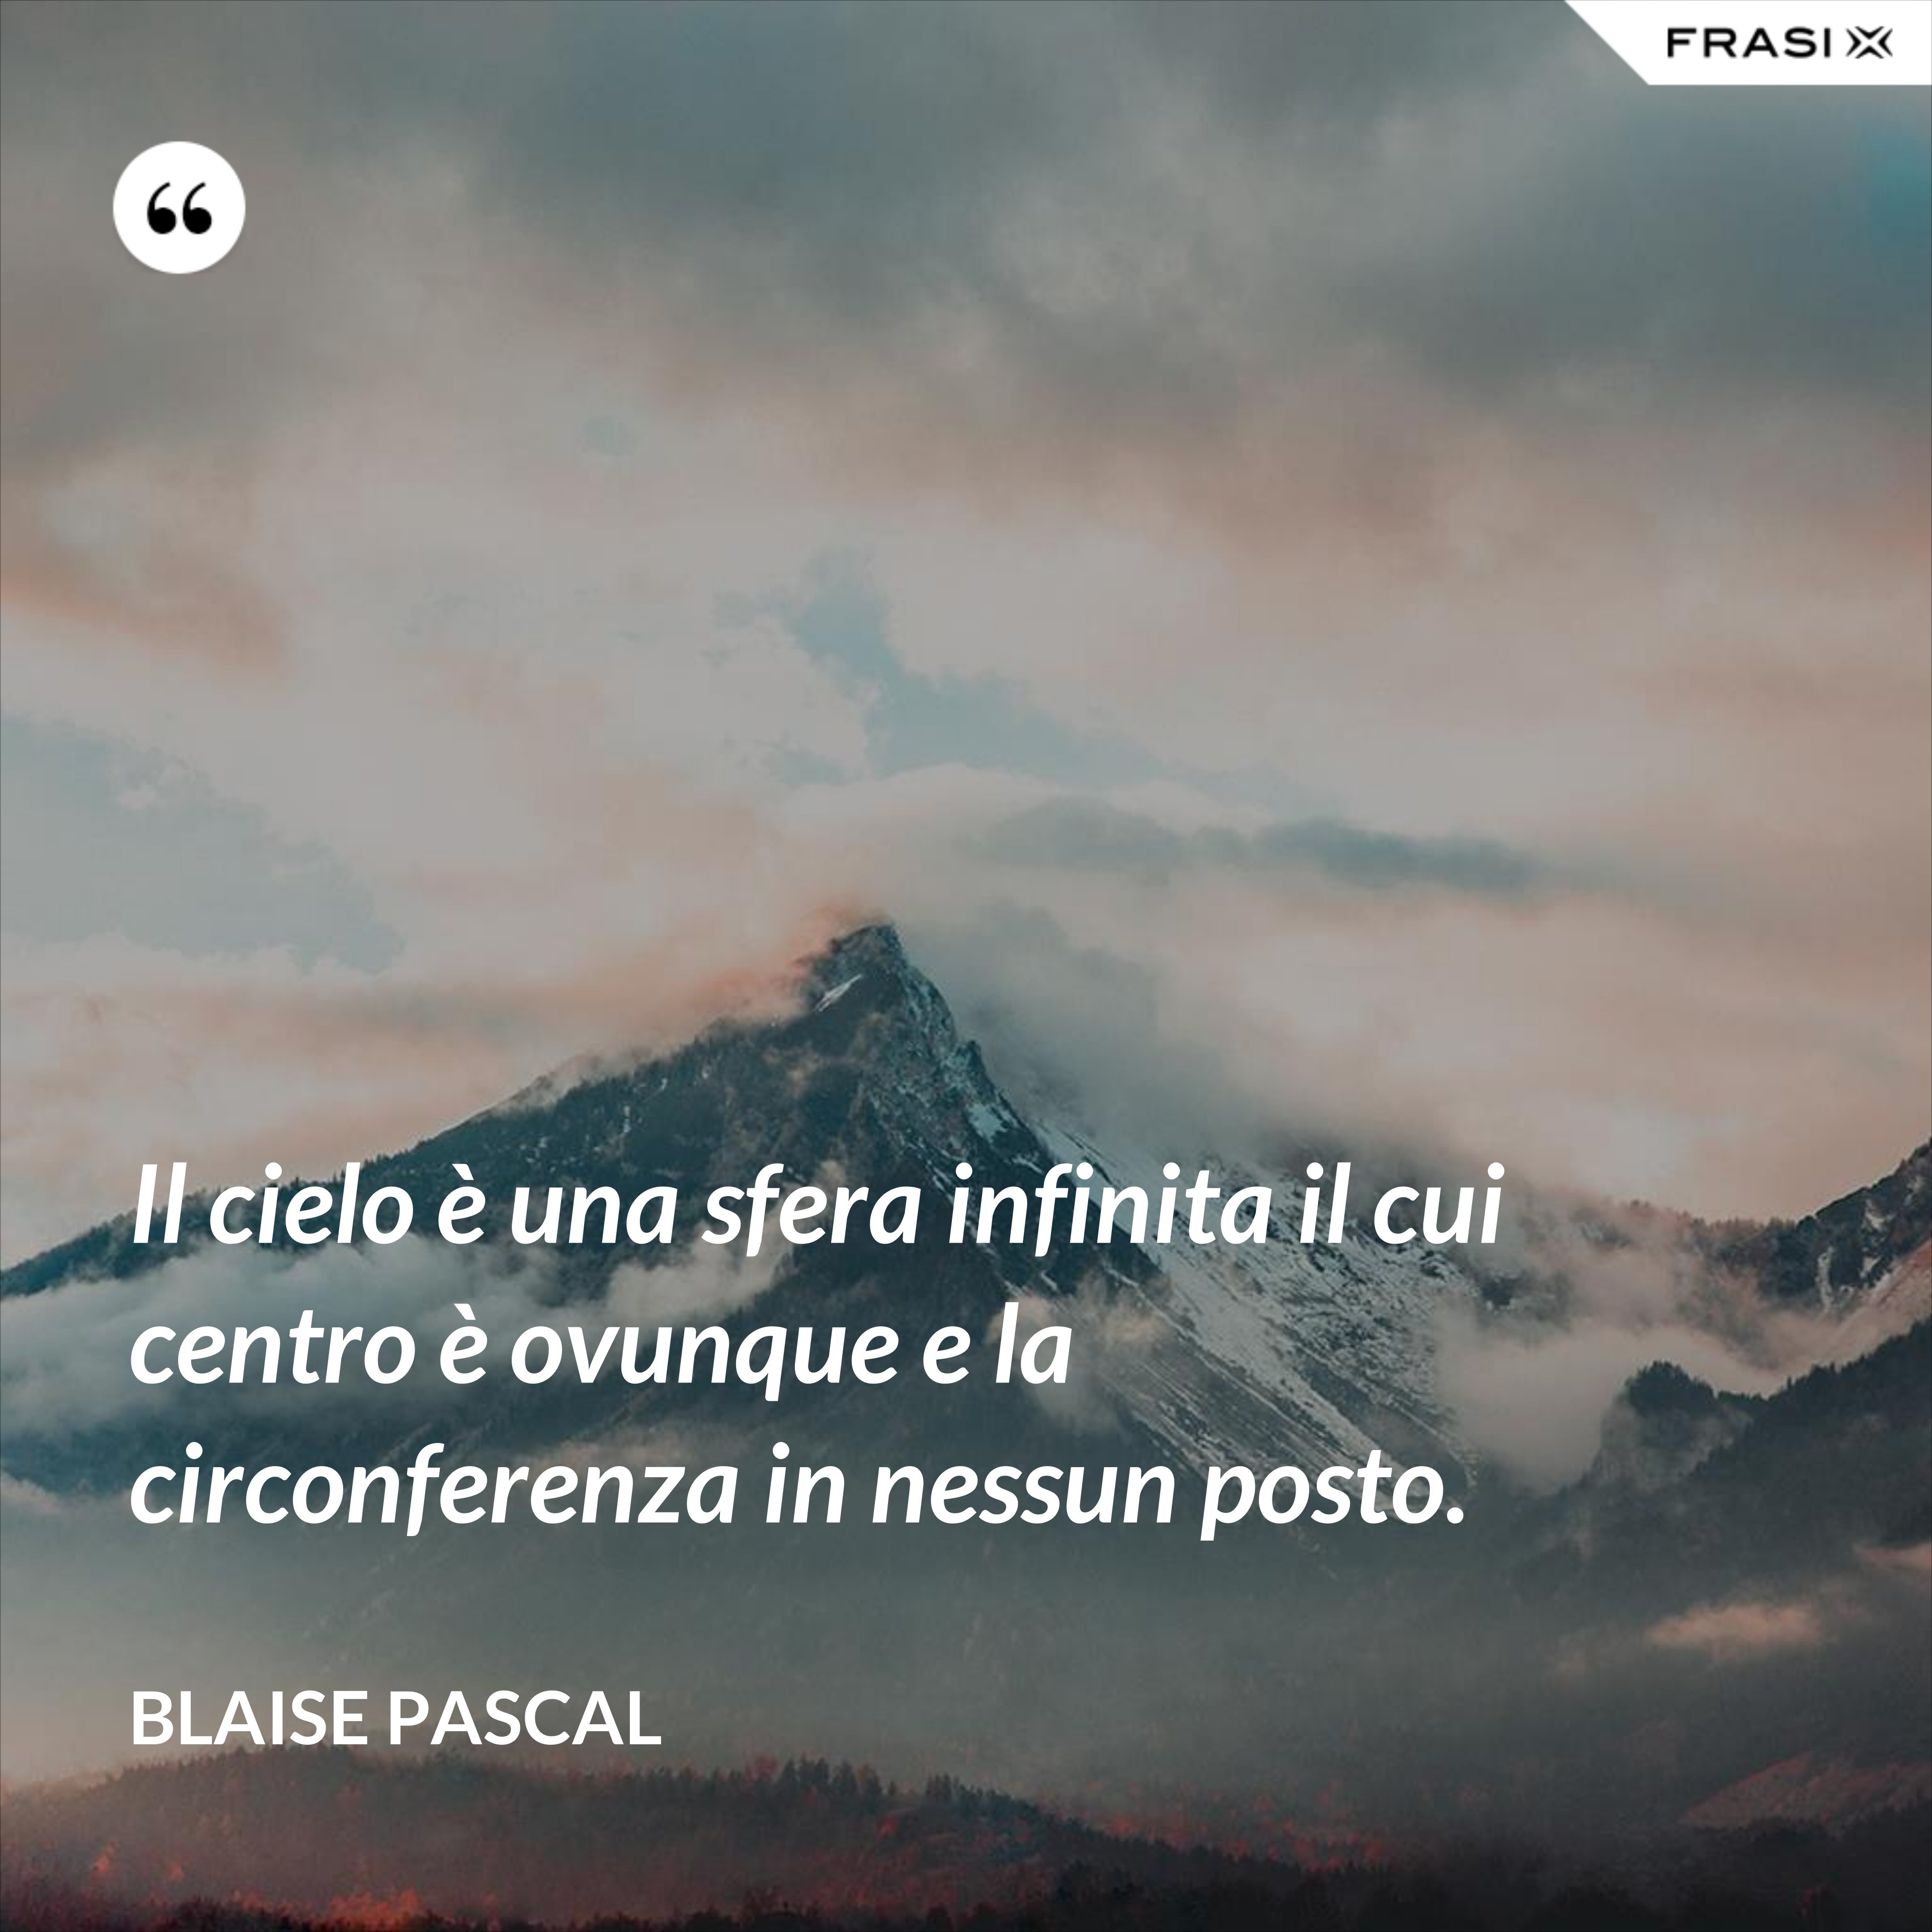 Il cielo è una sfera infinita il cui centro è ovunque e la circonferenza in nessun posto. - Blaise Pascal